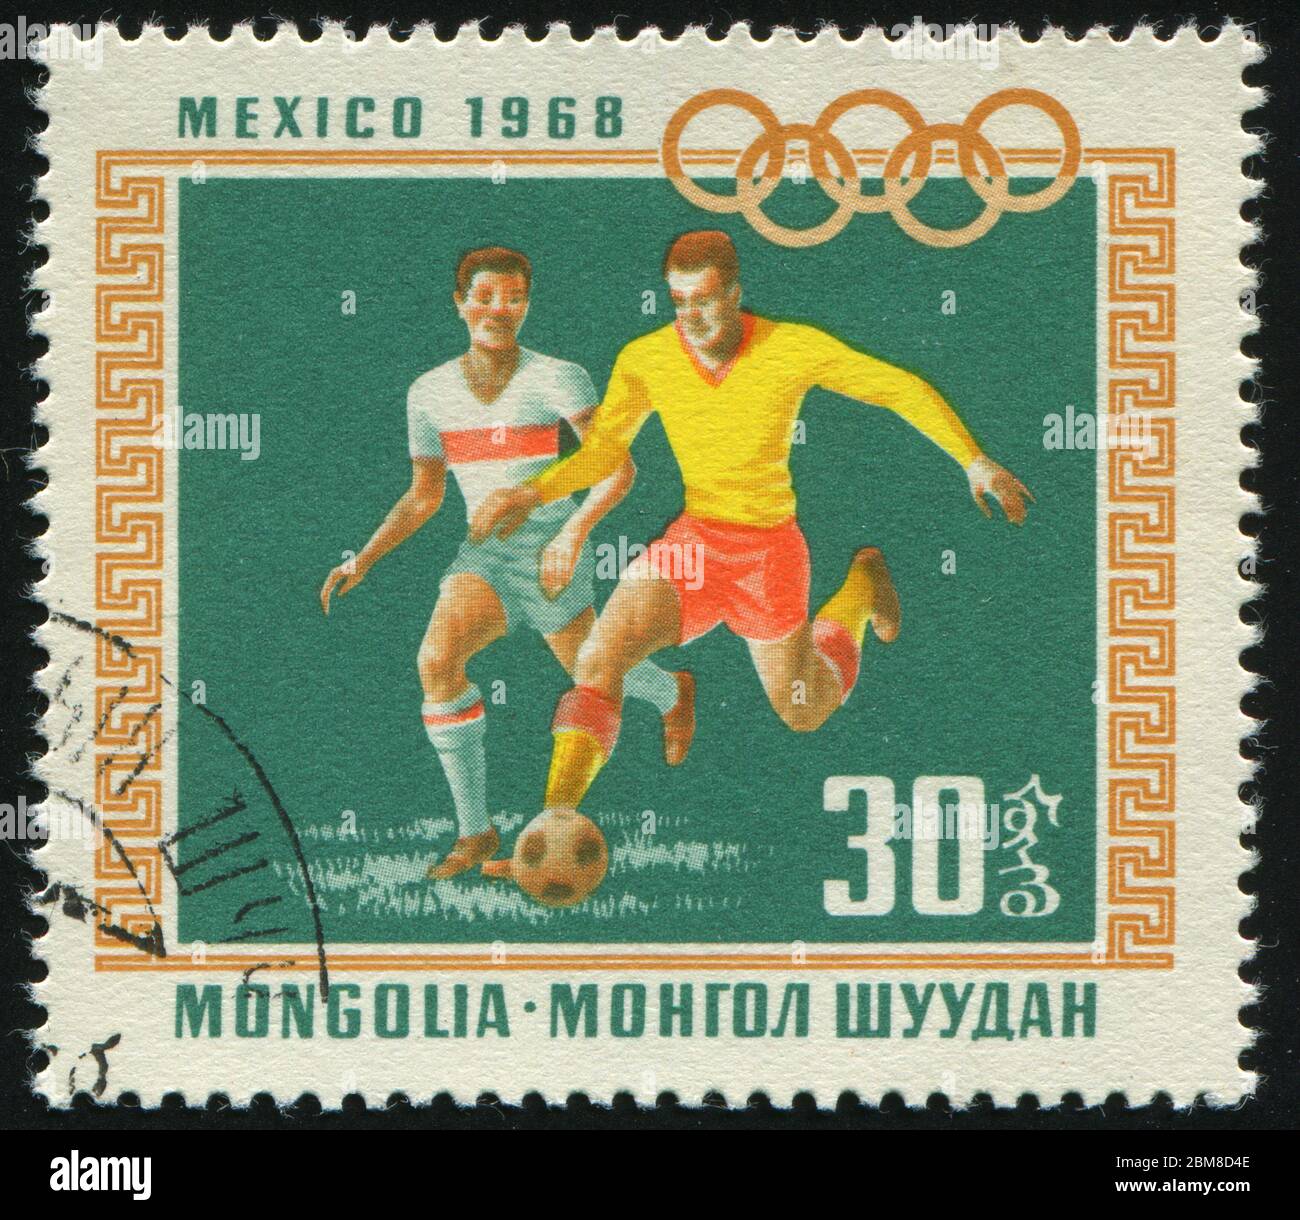 MONGOL - ALREDEDOR de 1968: Anillos Olímpicos y fútbol, alrededor de 1968. Foto de stock